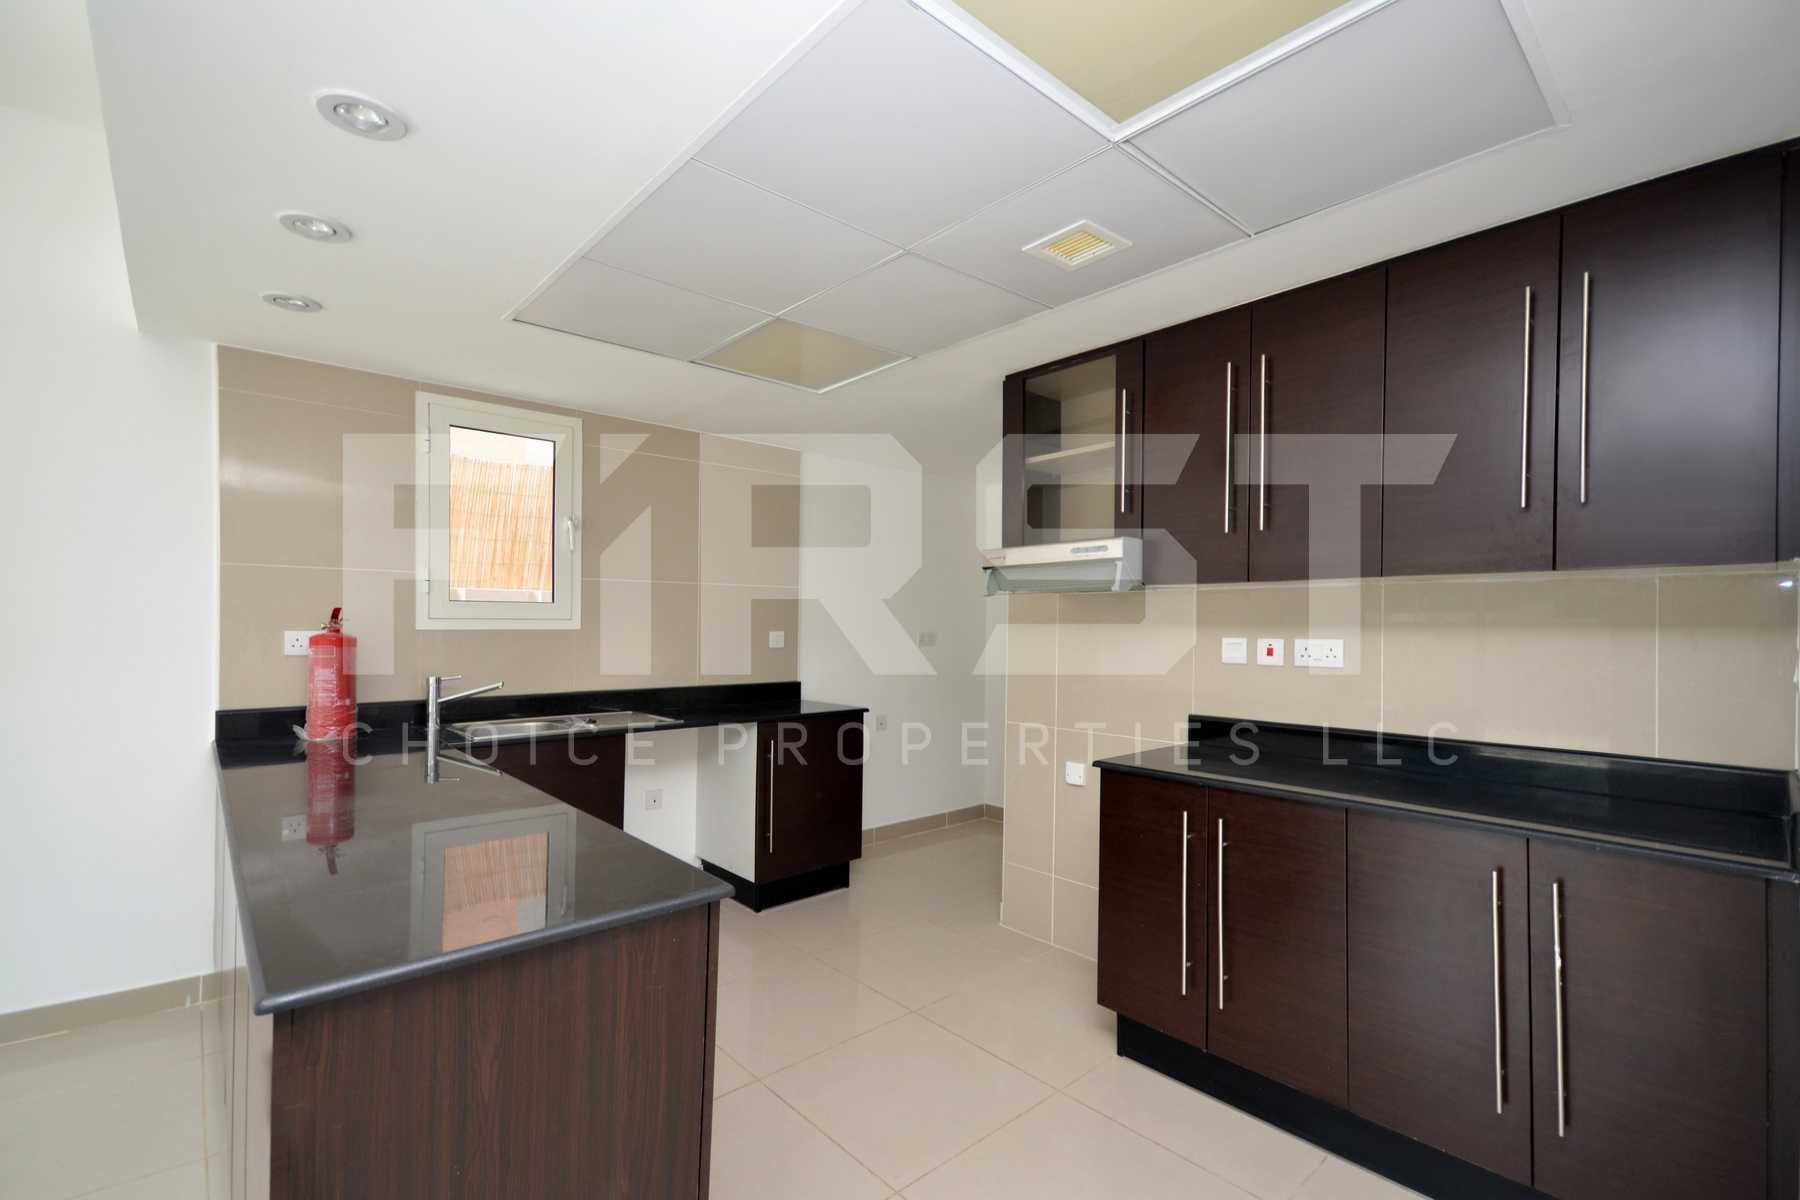 Internal Photo of 4 Bedroom Villa in Al Reef Villas Al Reef Abu Dhabi UAE 265.5 sq.m 2858 sq.ft (7).jpg